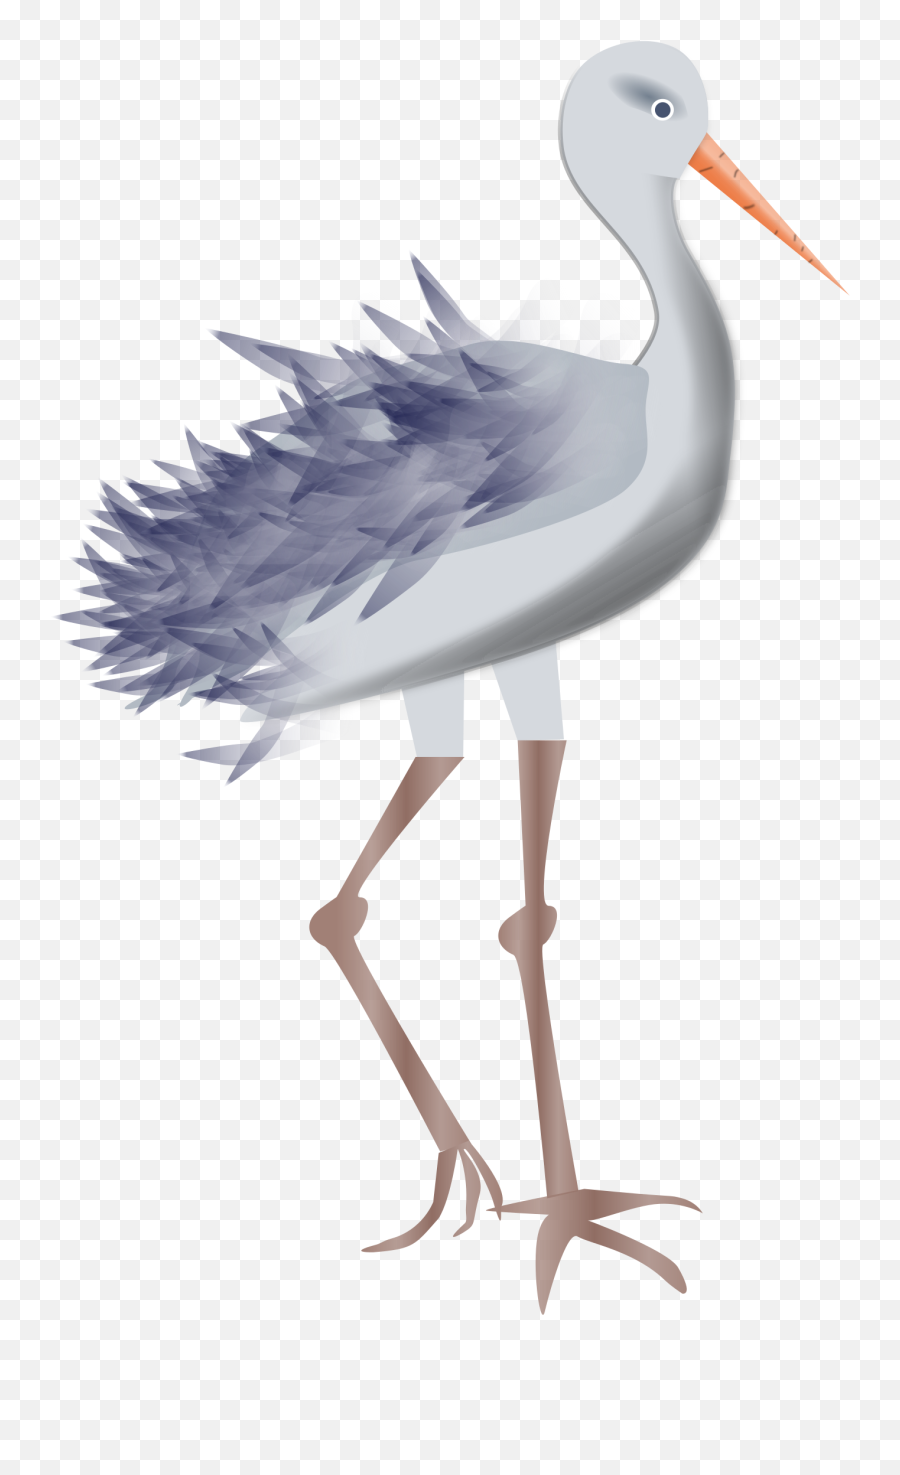 Stork Clipart Crane - Bird Legs Transparent Png,Crane Bird Png